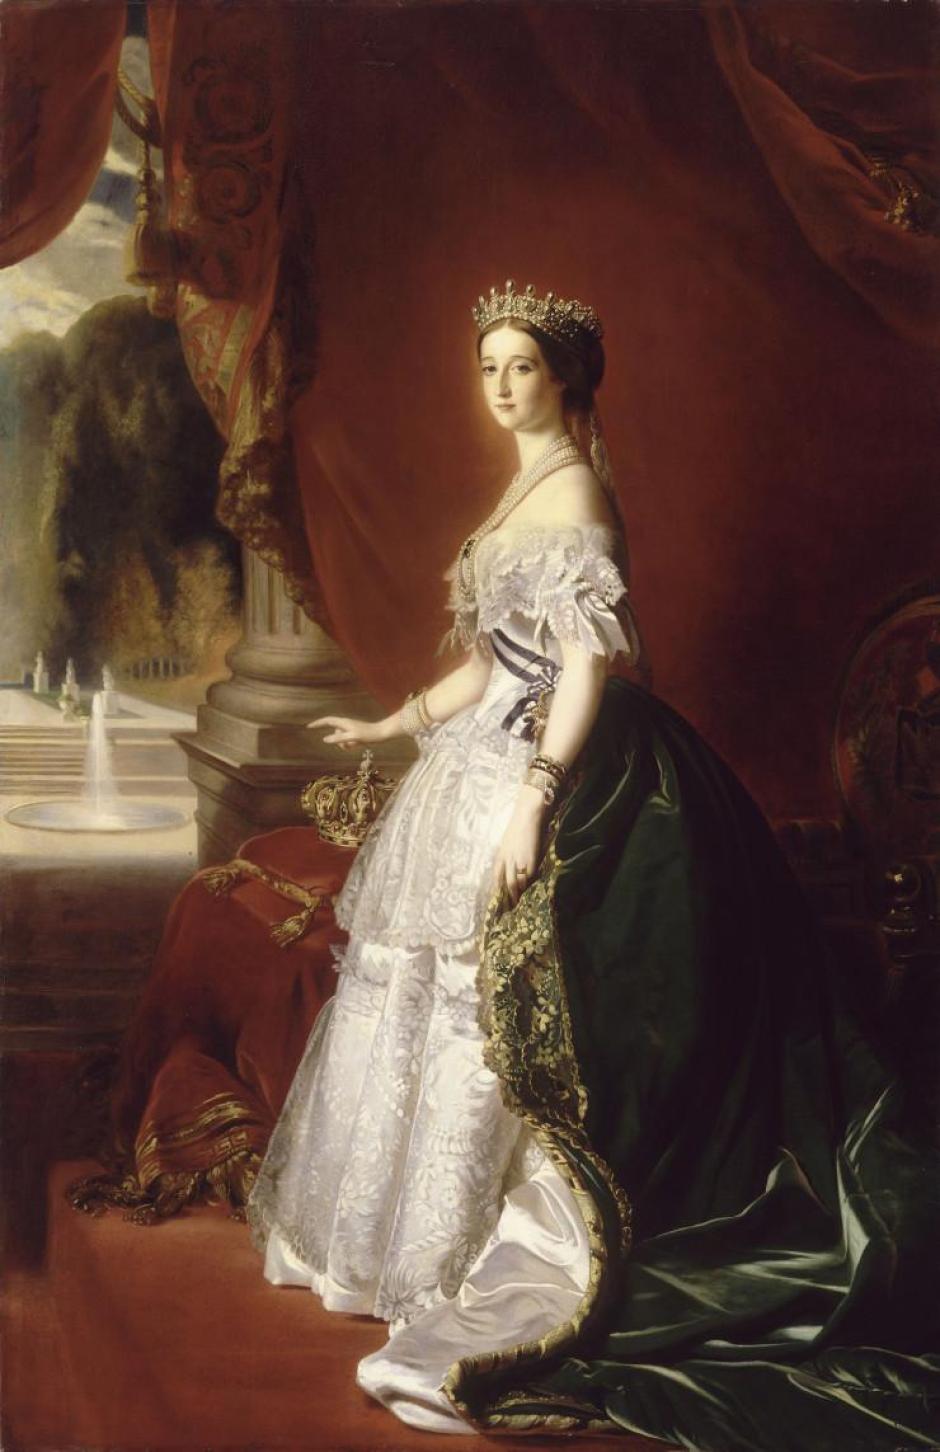 Eugenia de Montijo, Emperatriz de los franceses, retratada por Franz Xaver Winterhalter